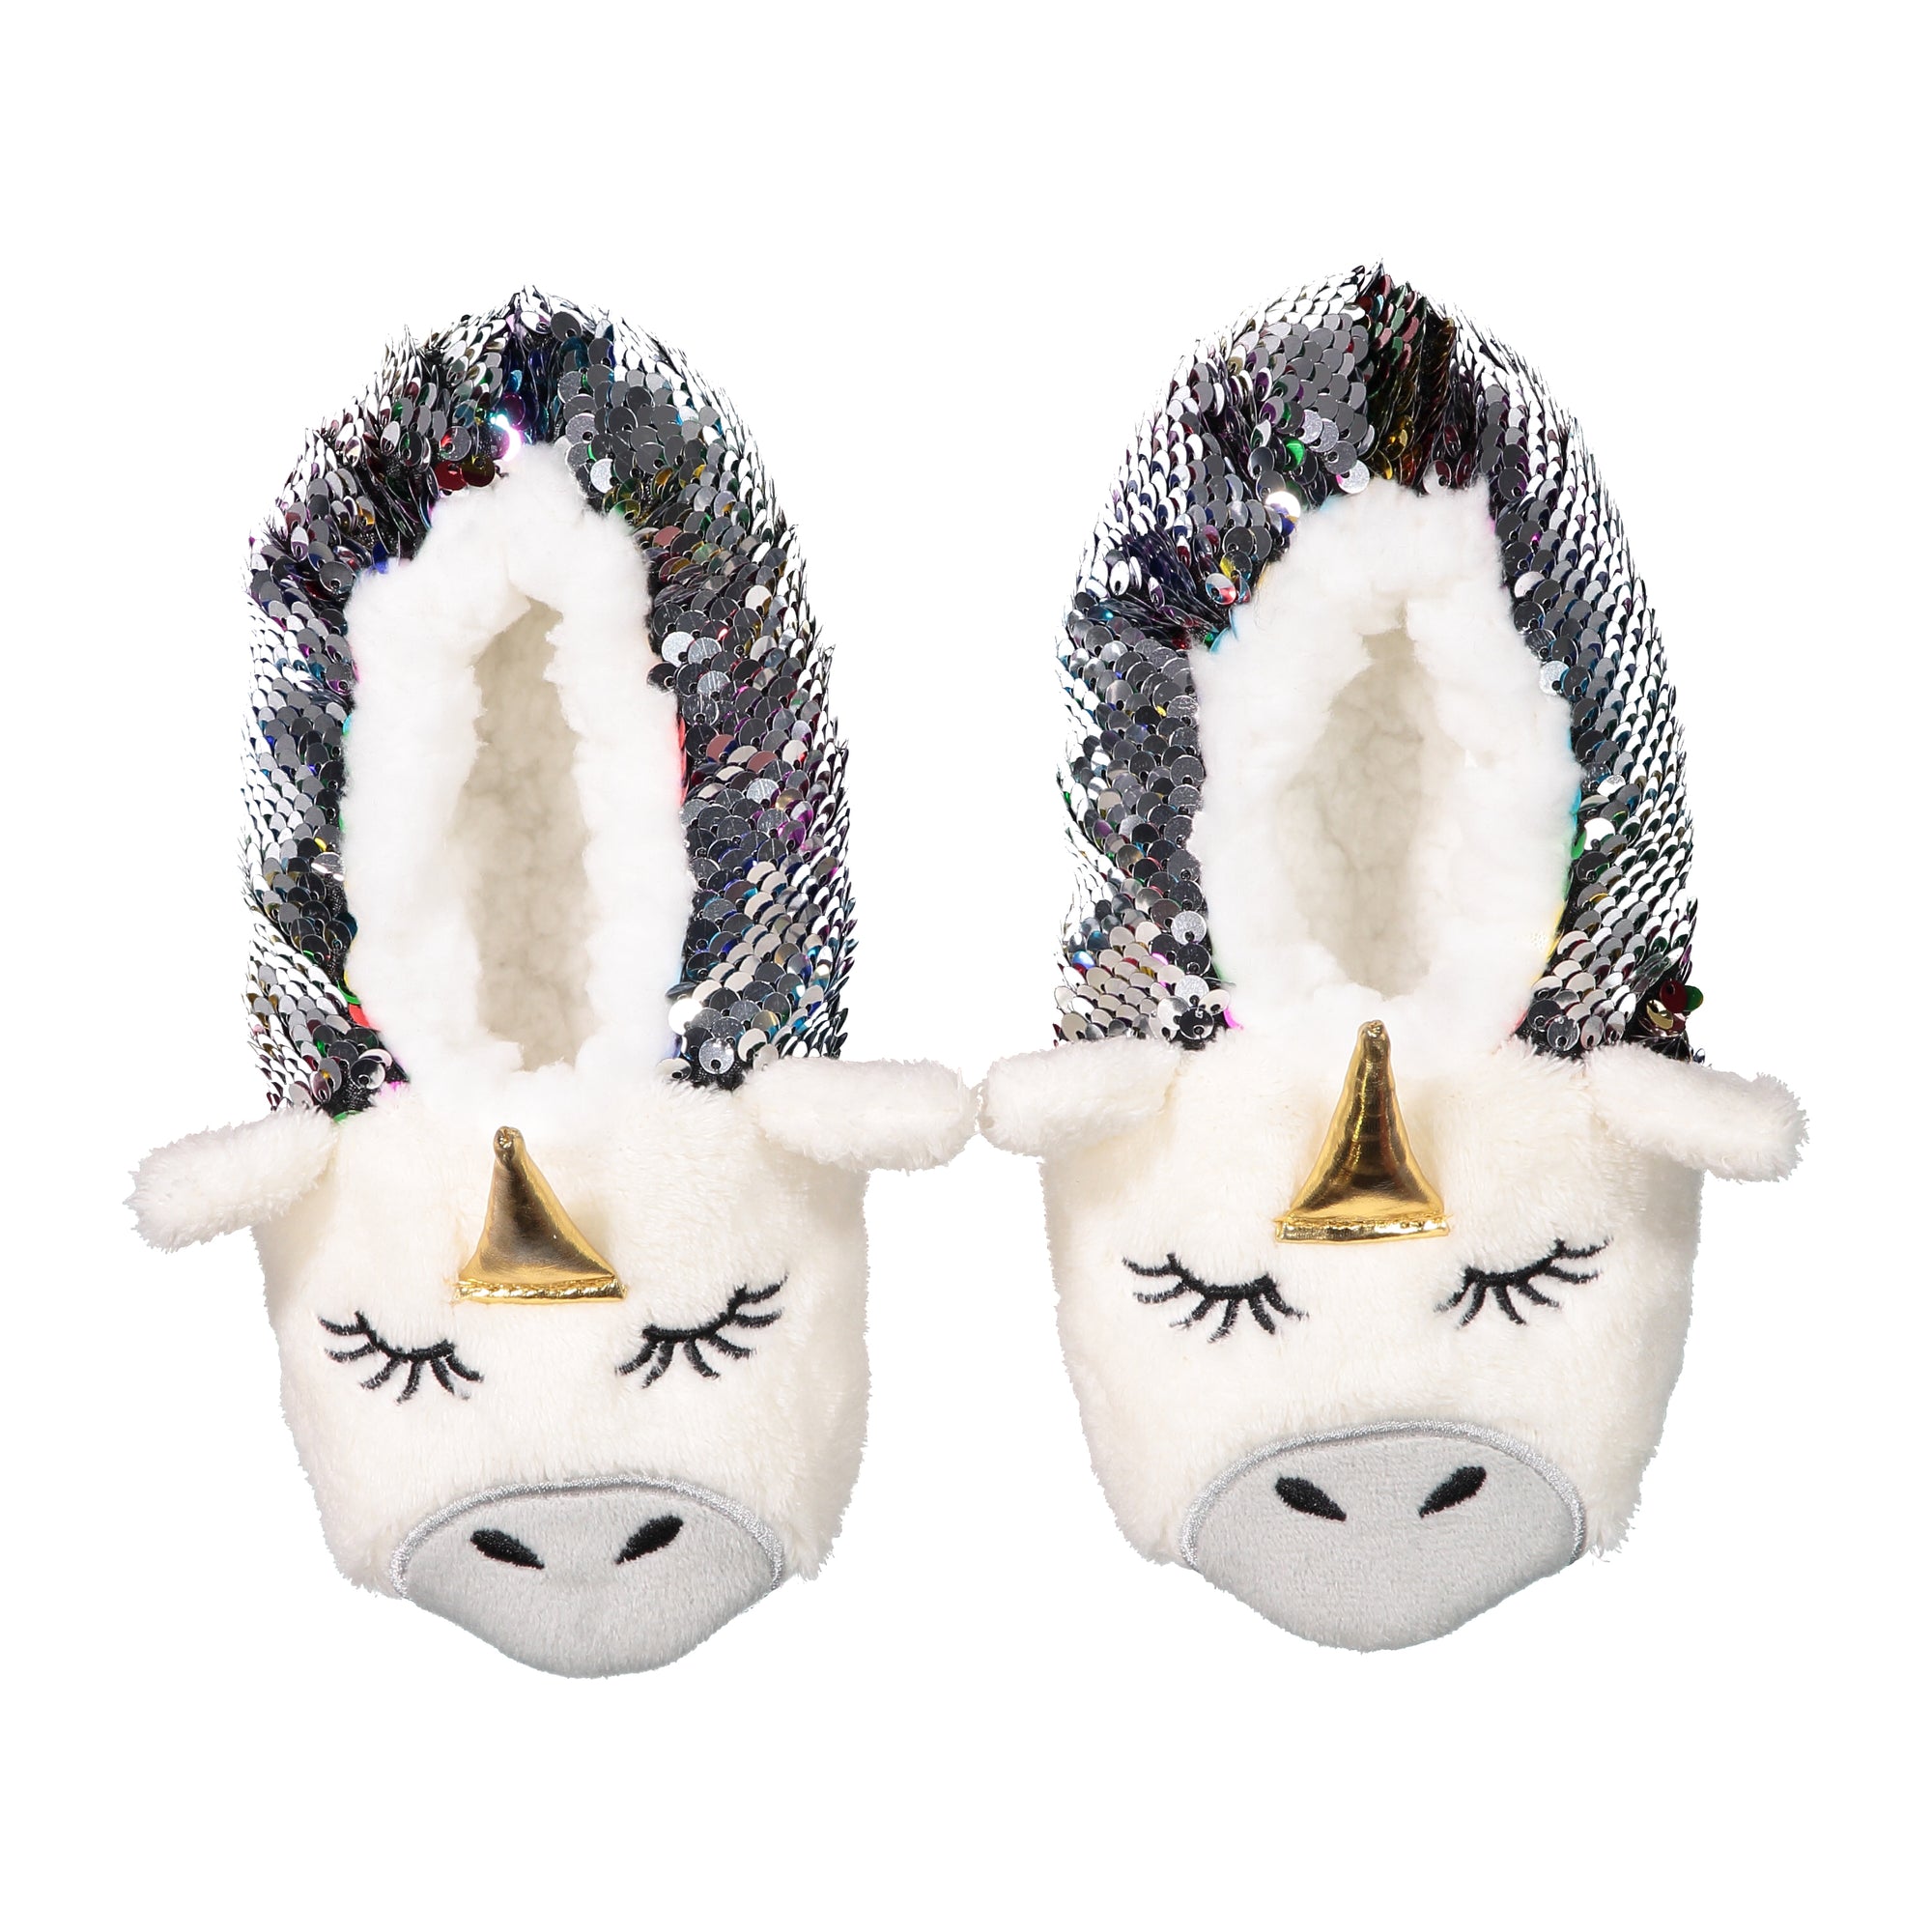 unicorn sequin slippers